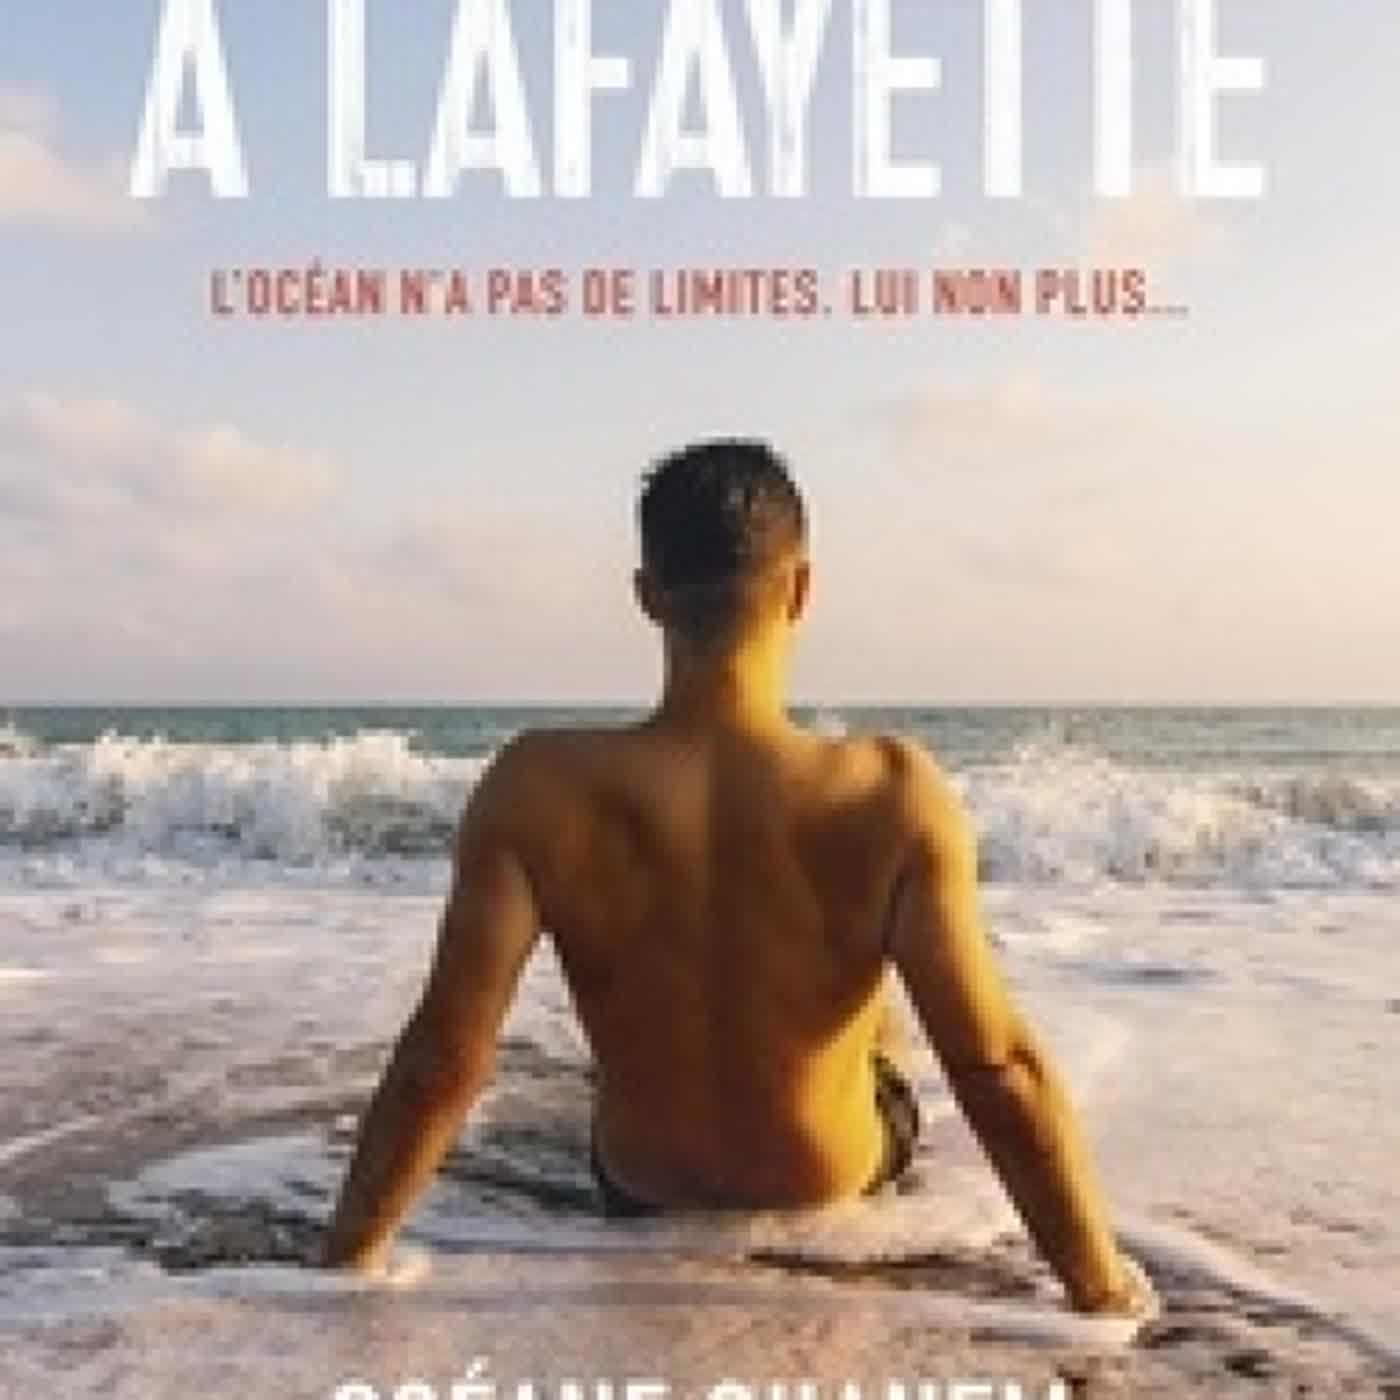 [Pdf/ePub] Bienvenue à Lafayette by Océane Ghanem download ebook